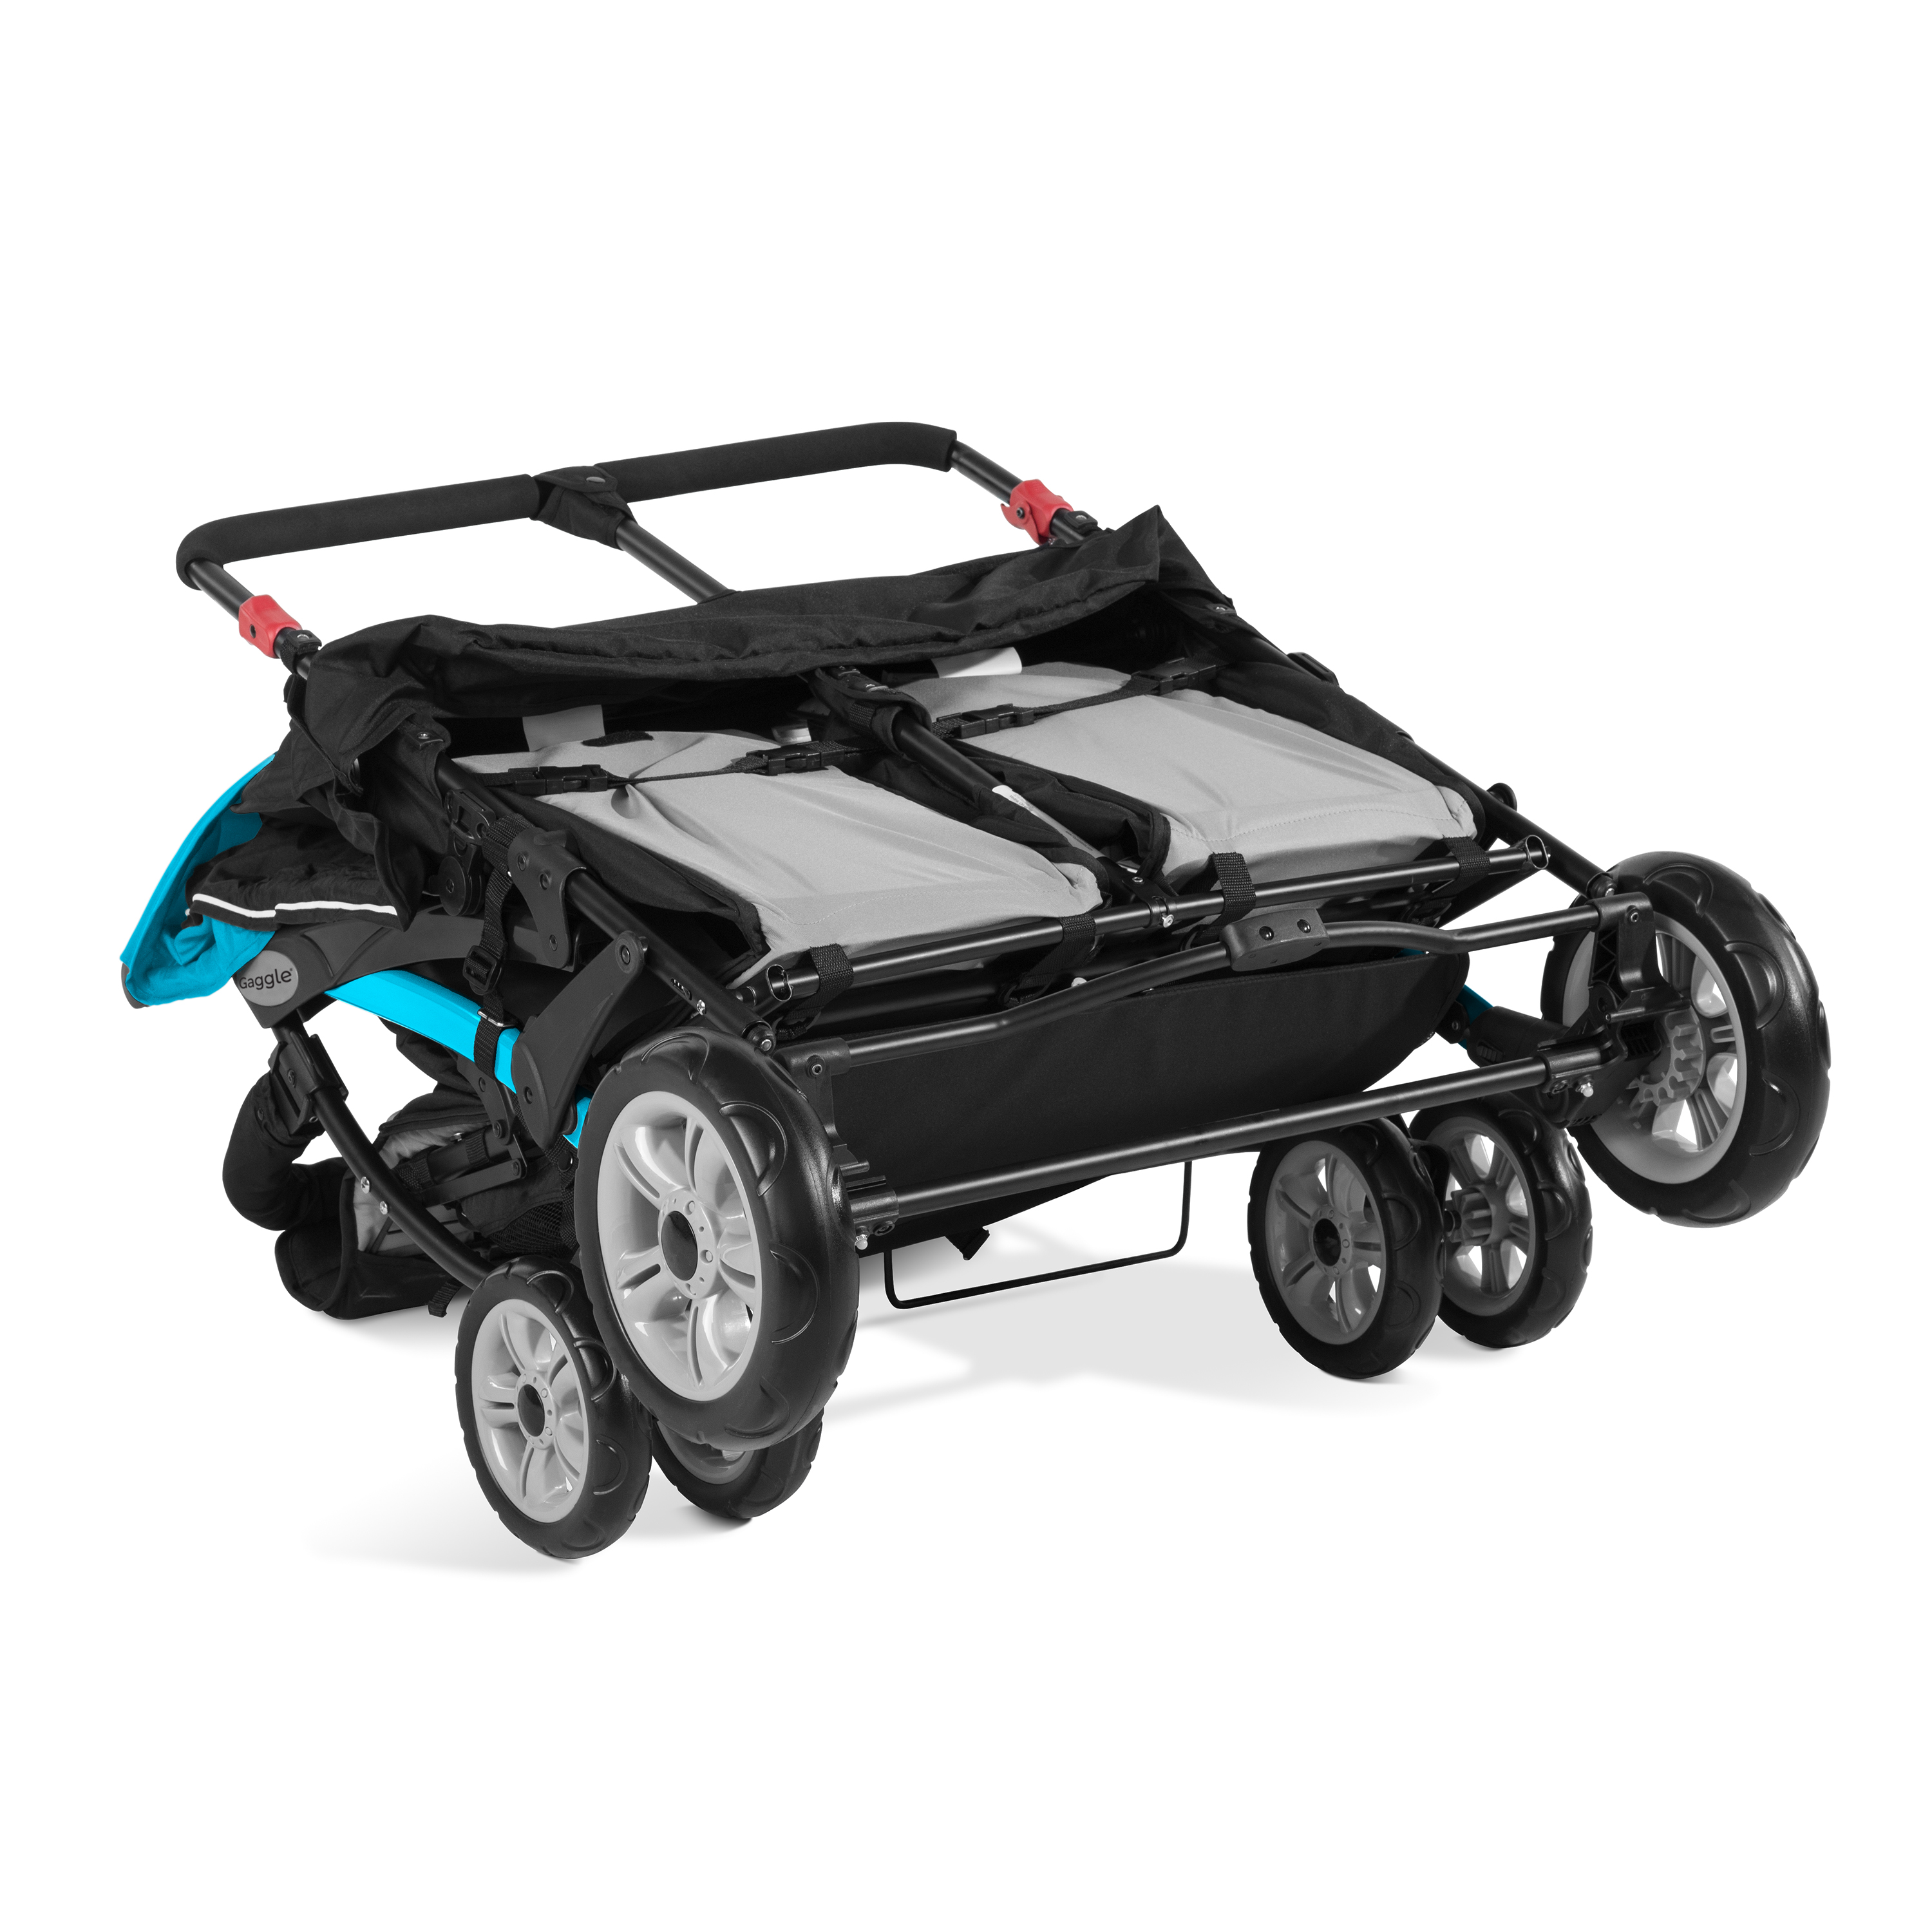 Gaggle Compass 4x4 quad kinderwagen / buggy voor 4 kinderen in turquoise